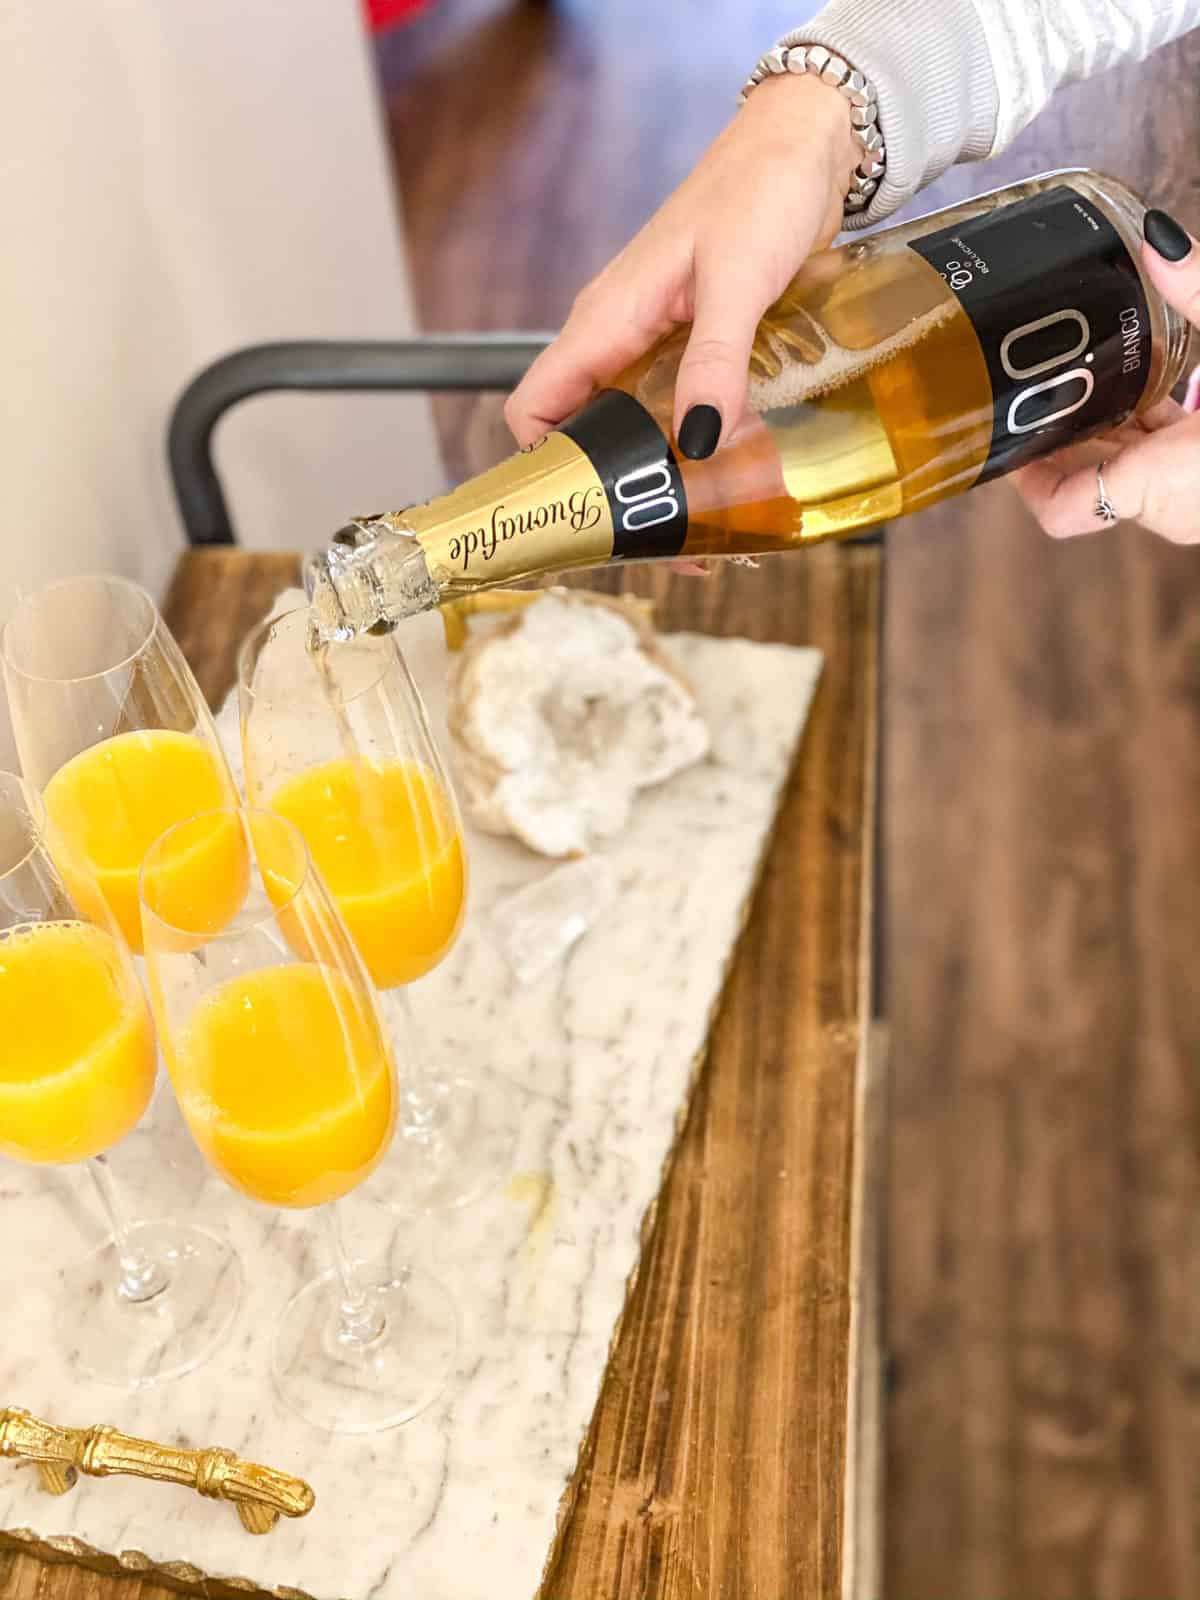 Mimosa Mocktail - Mimosa Mixer (Tangerine & Mango)